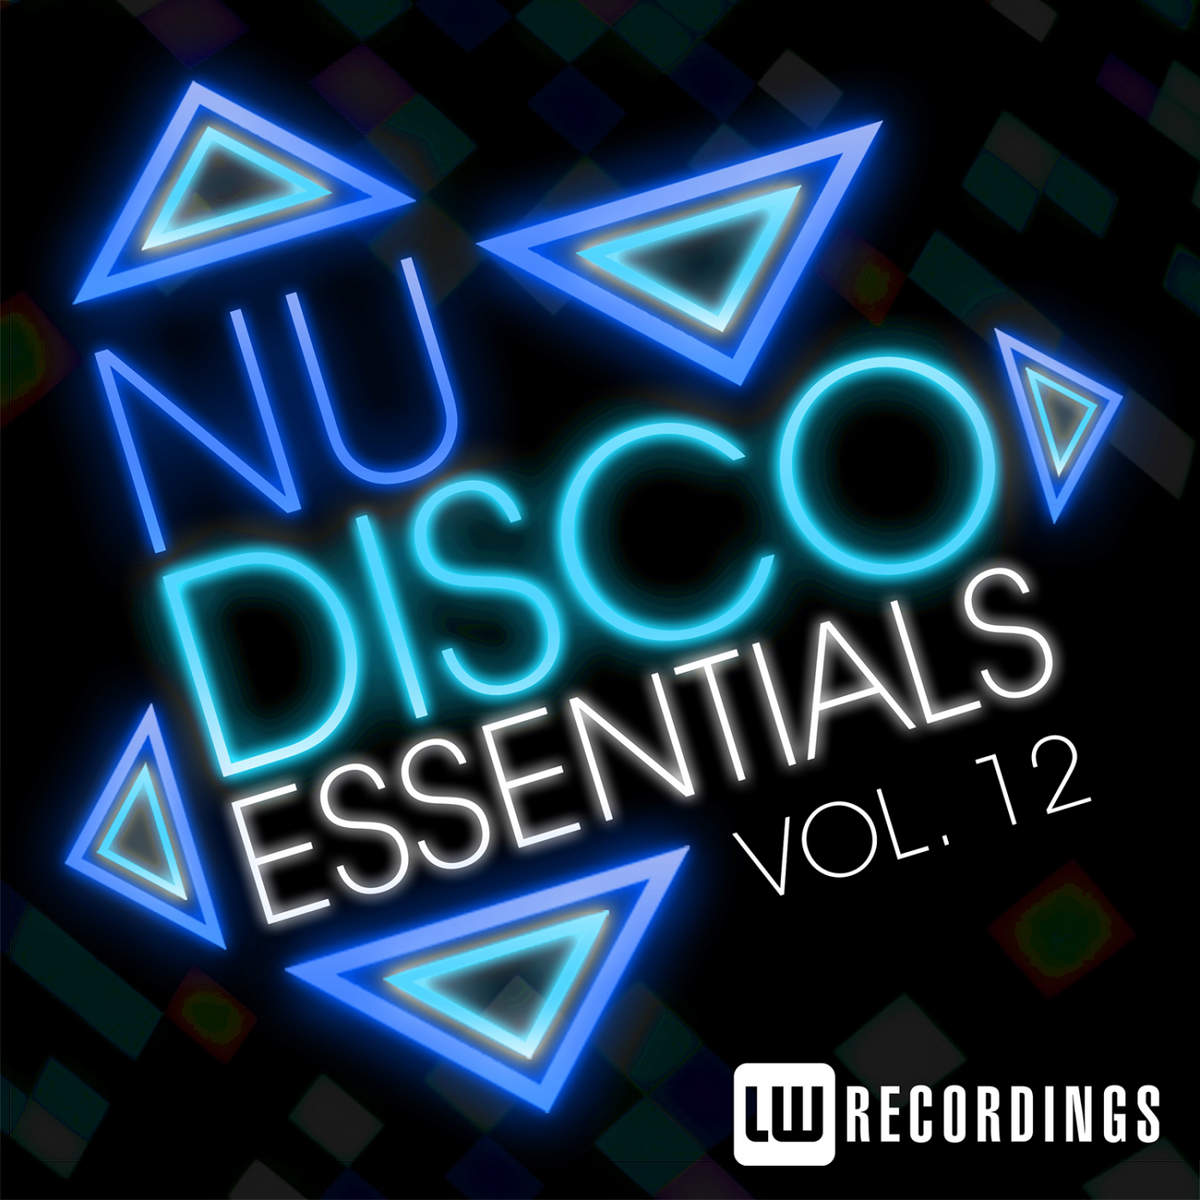 00-VA-Nu-Disco Essentials Vol. 12-2015-